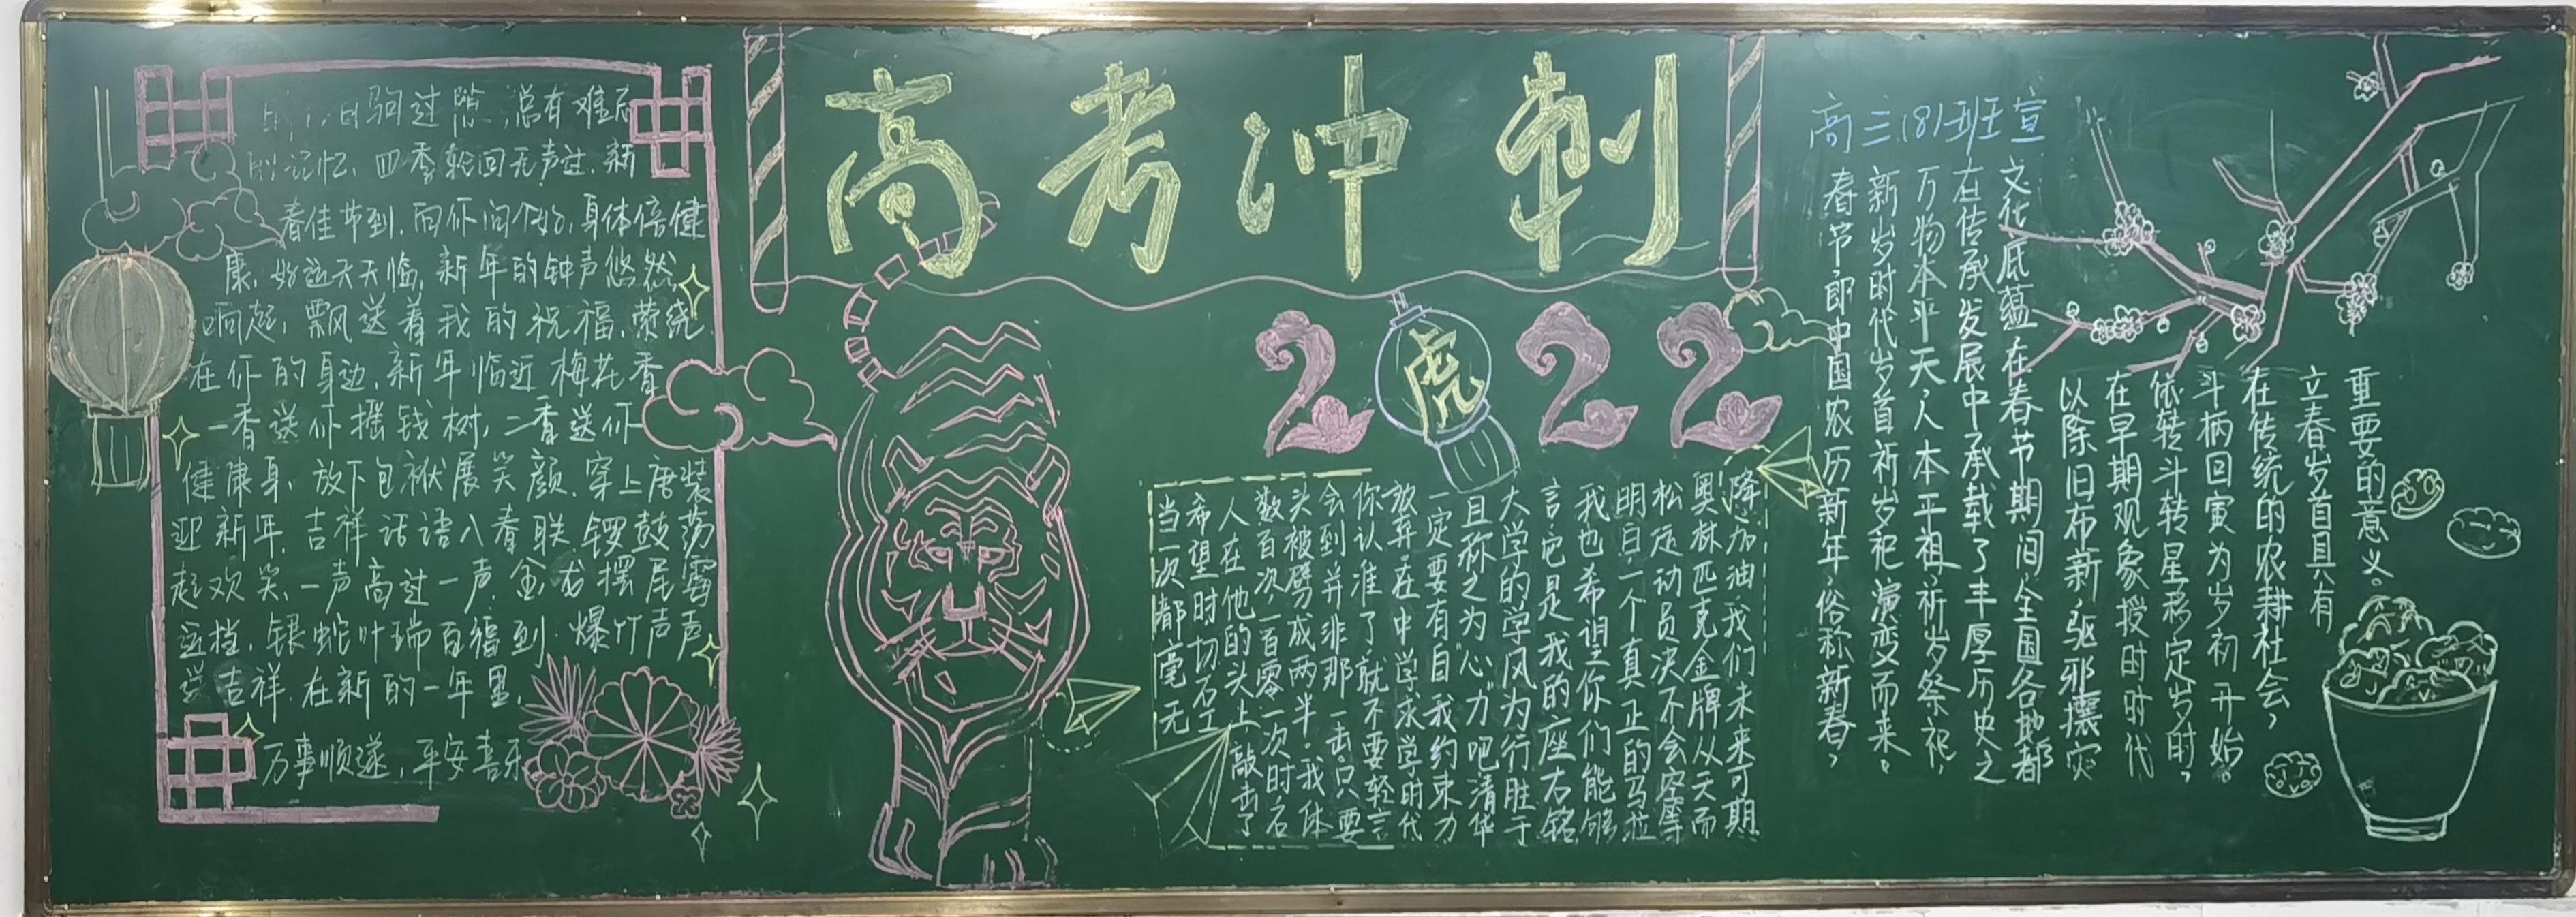 【团委动态】五彩粉笔绘中国颜色(图8)